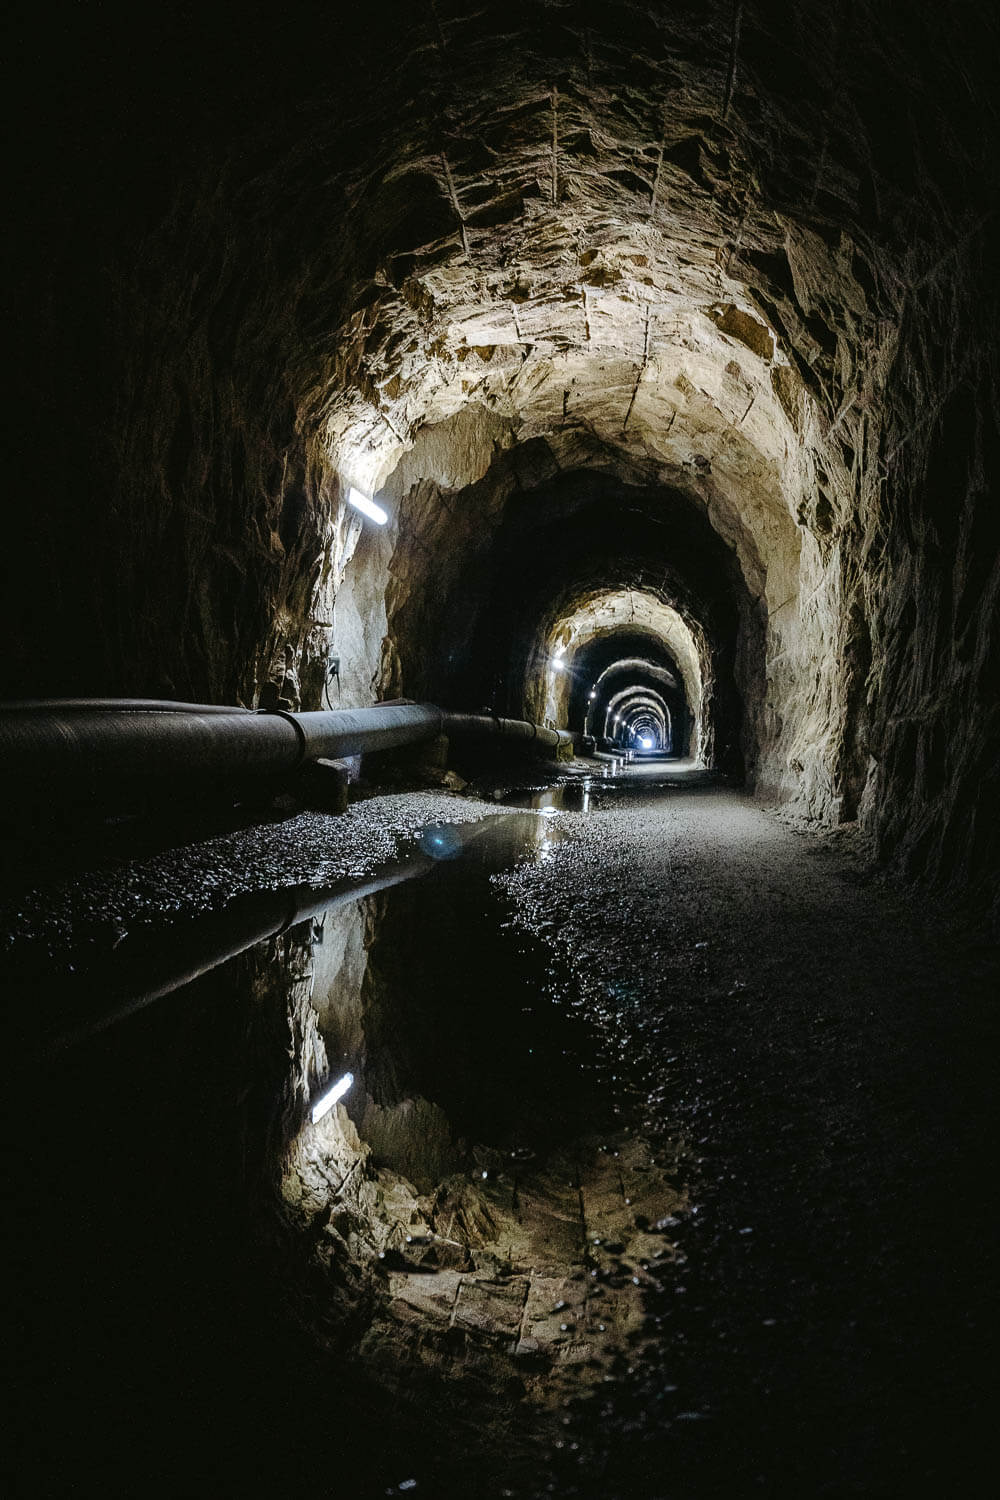 The Tälligrattunnel